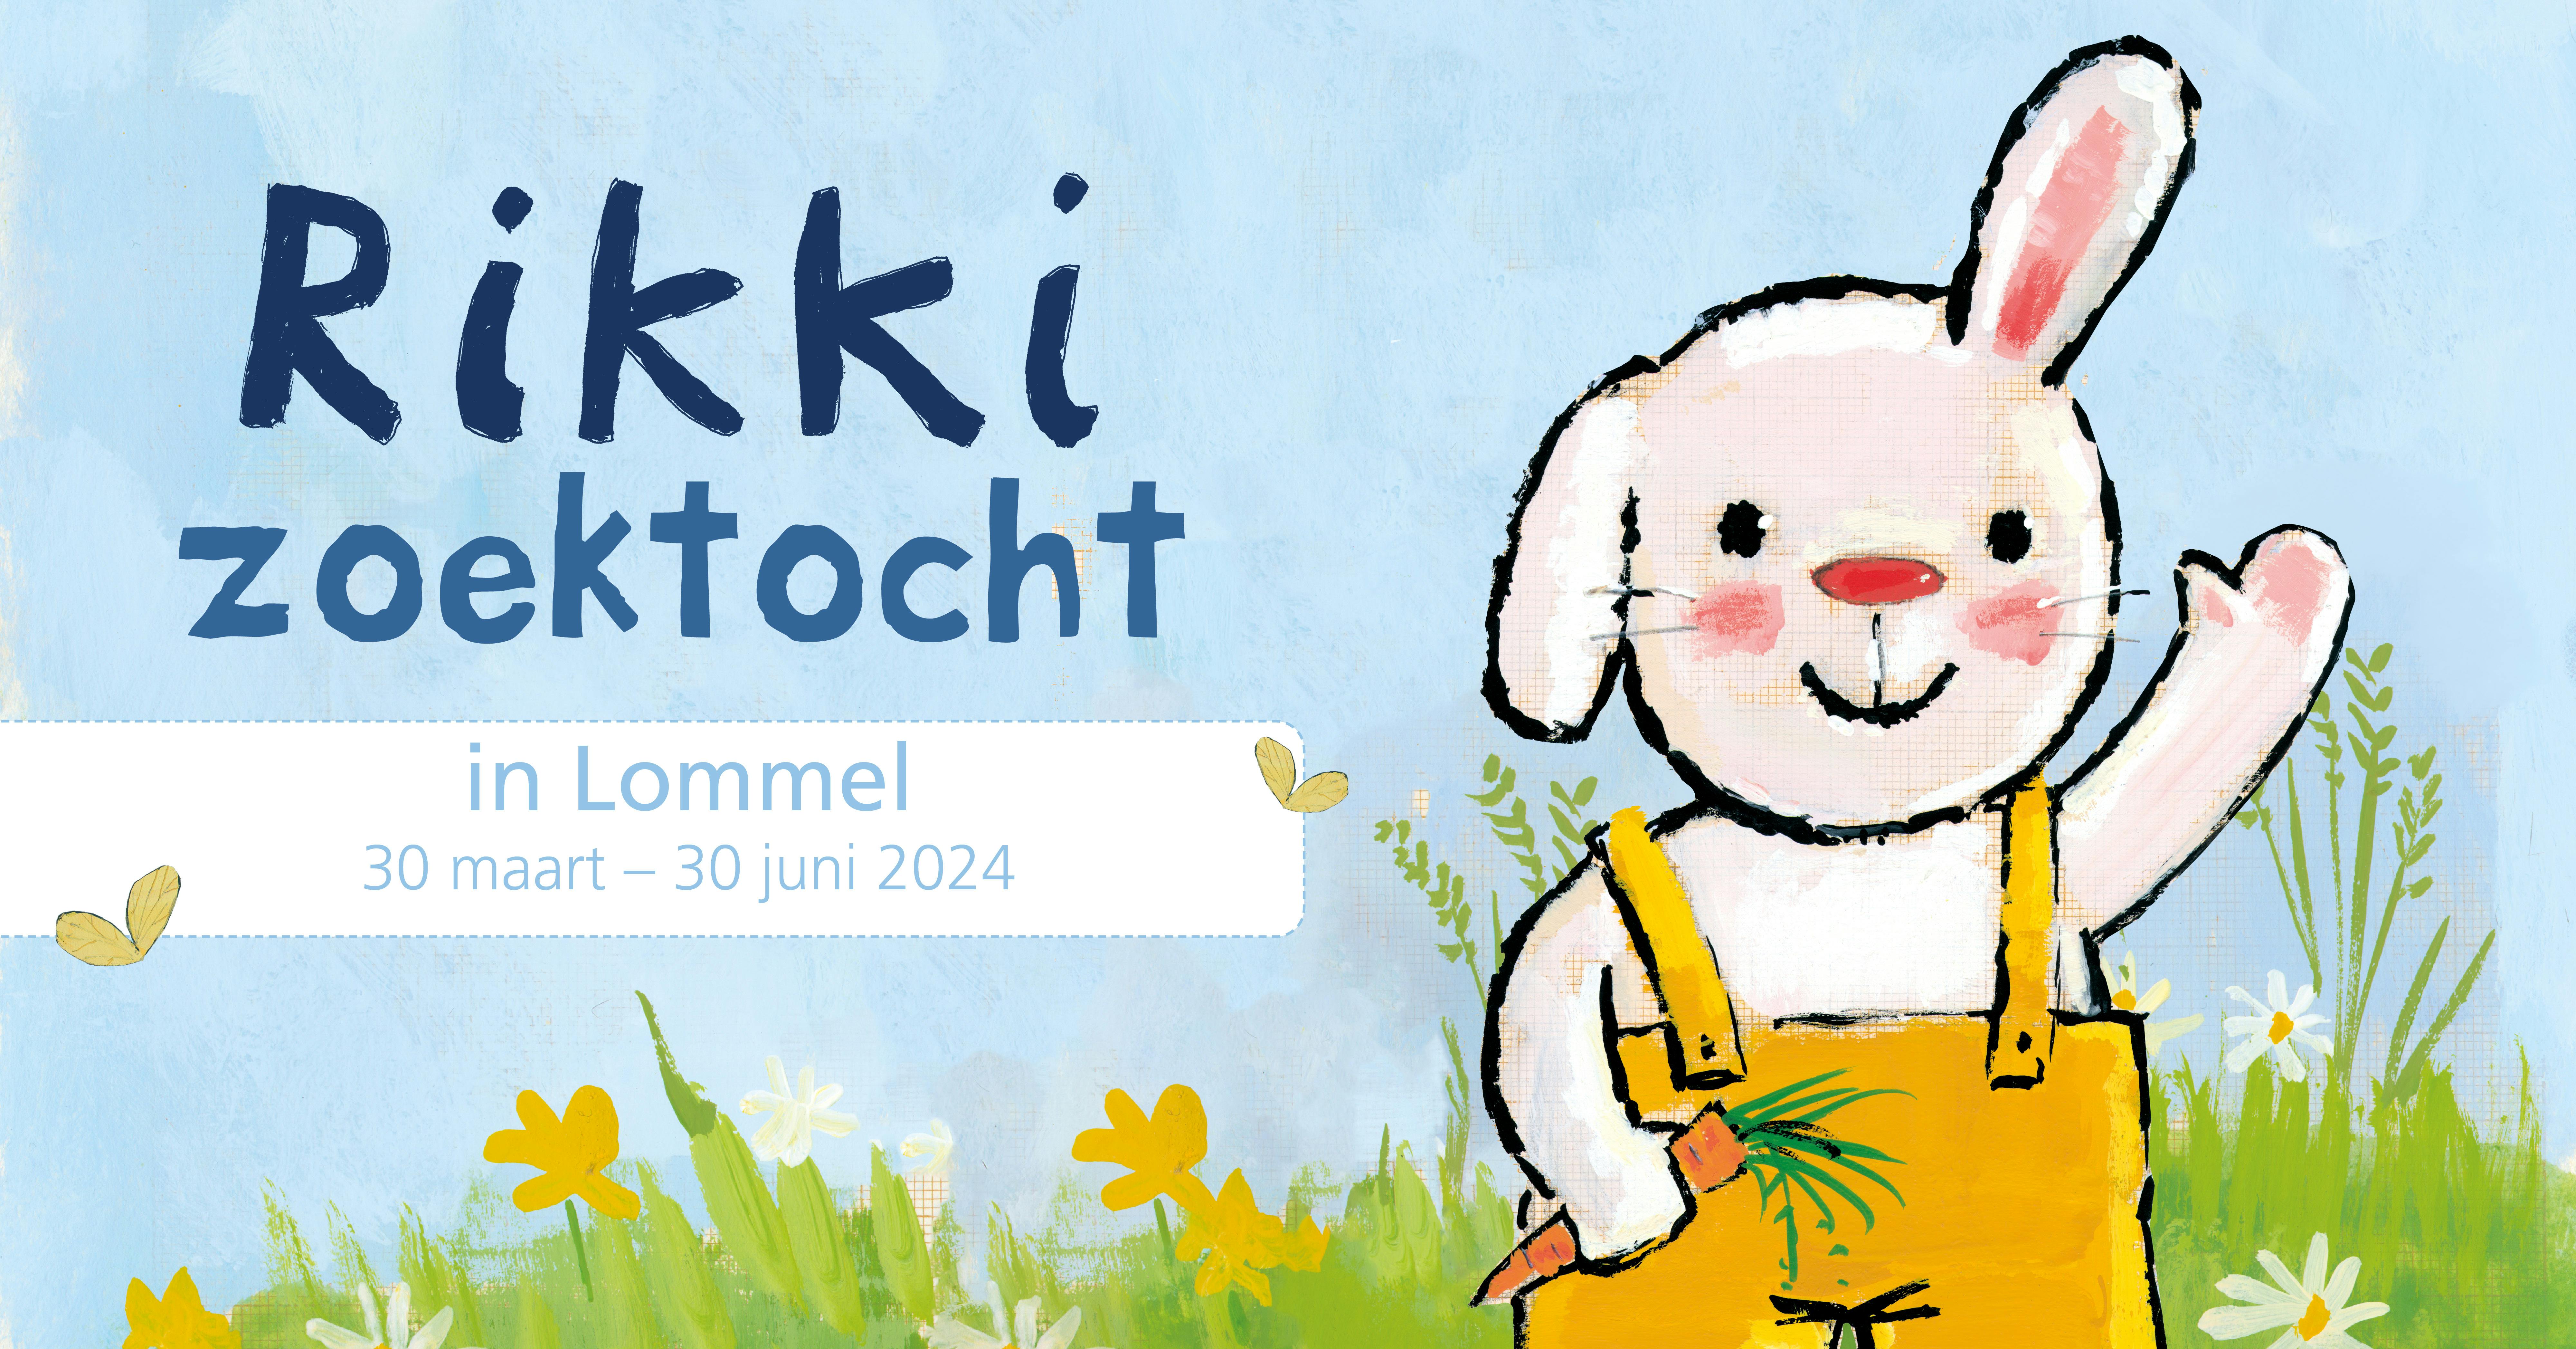 Een banner ter promotie van de Rikki zoektocht in Lommel. Deze zoektocht loopt vanaf zaterdag 30 maart 2024 tot en met zondag 30 juni 2024. Op de banner staat Rikki ook al zwaaiend naast de praktische informatie. 